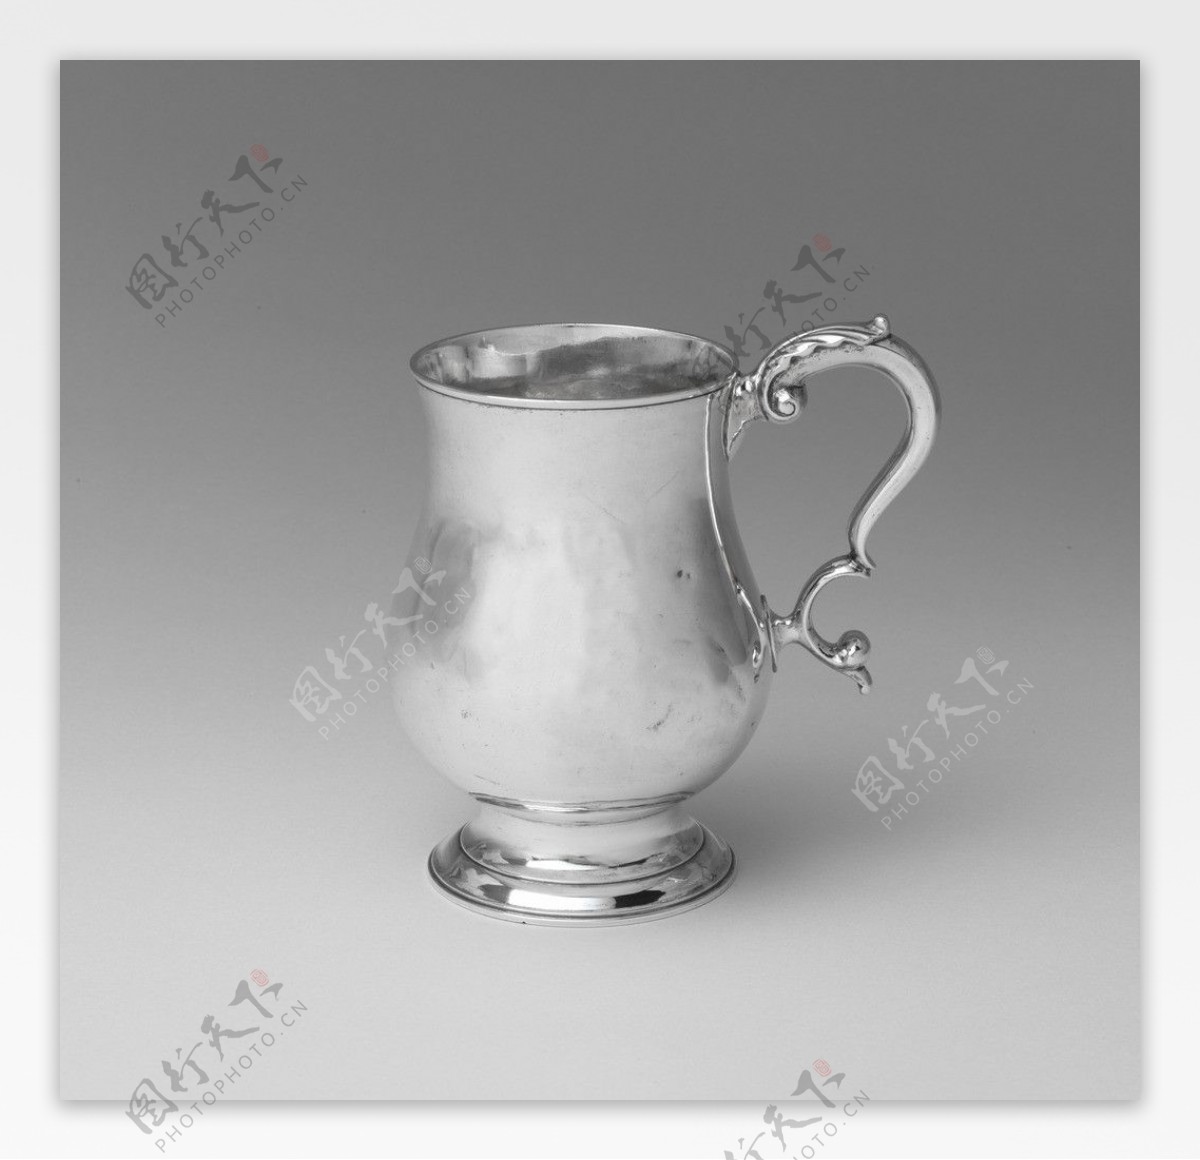 银质茶壶图片